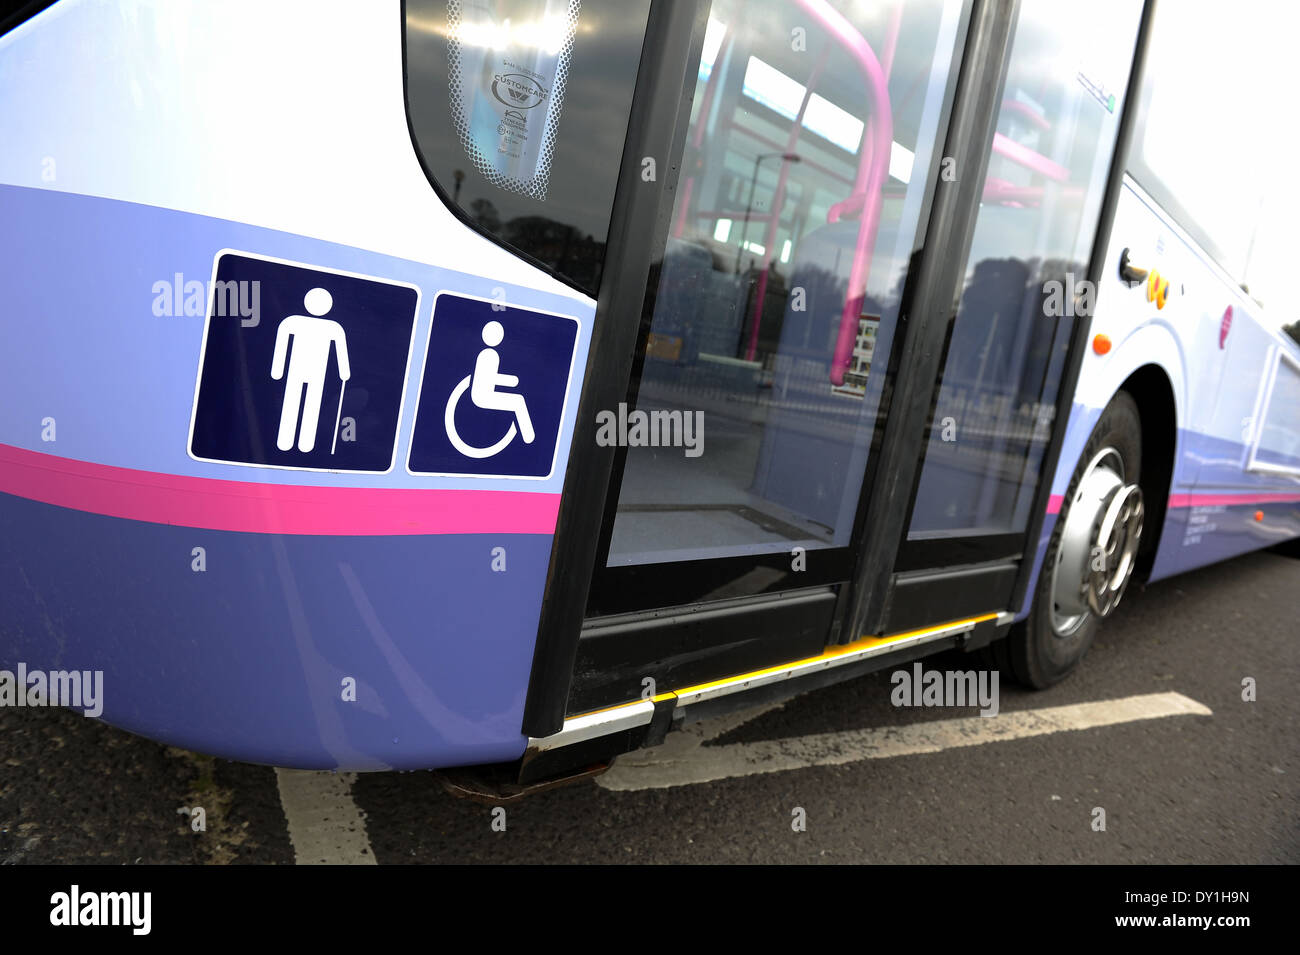 Disabilitato l'accesso al bus di autobus pubblici che si abbassa per consentire l'accesso per le persone disabili e su sedia a rotelle, REGNO UNITO Foto Stock